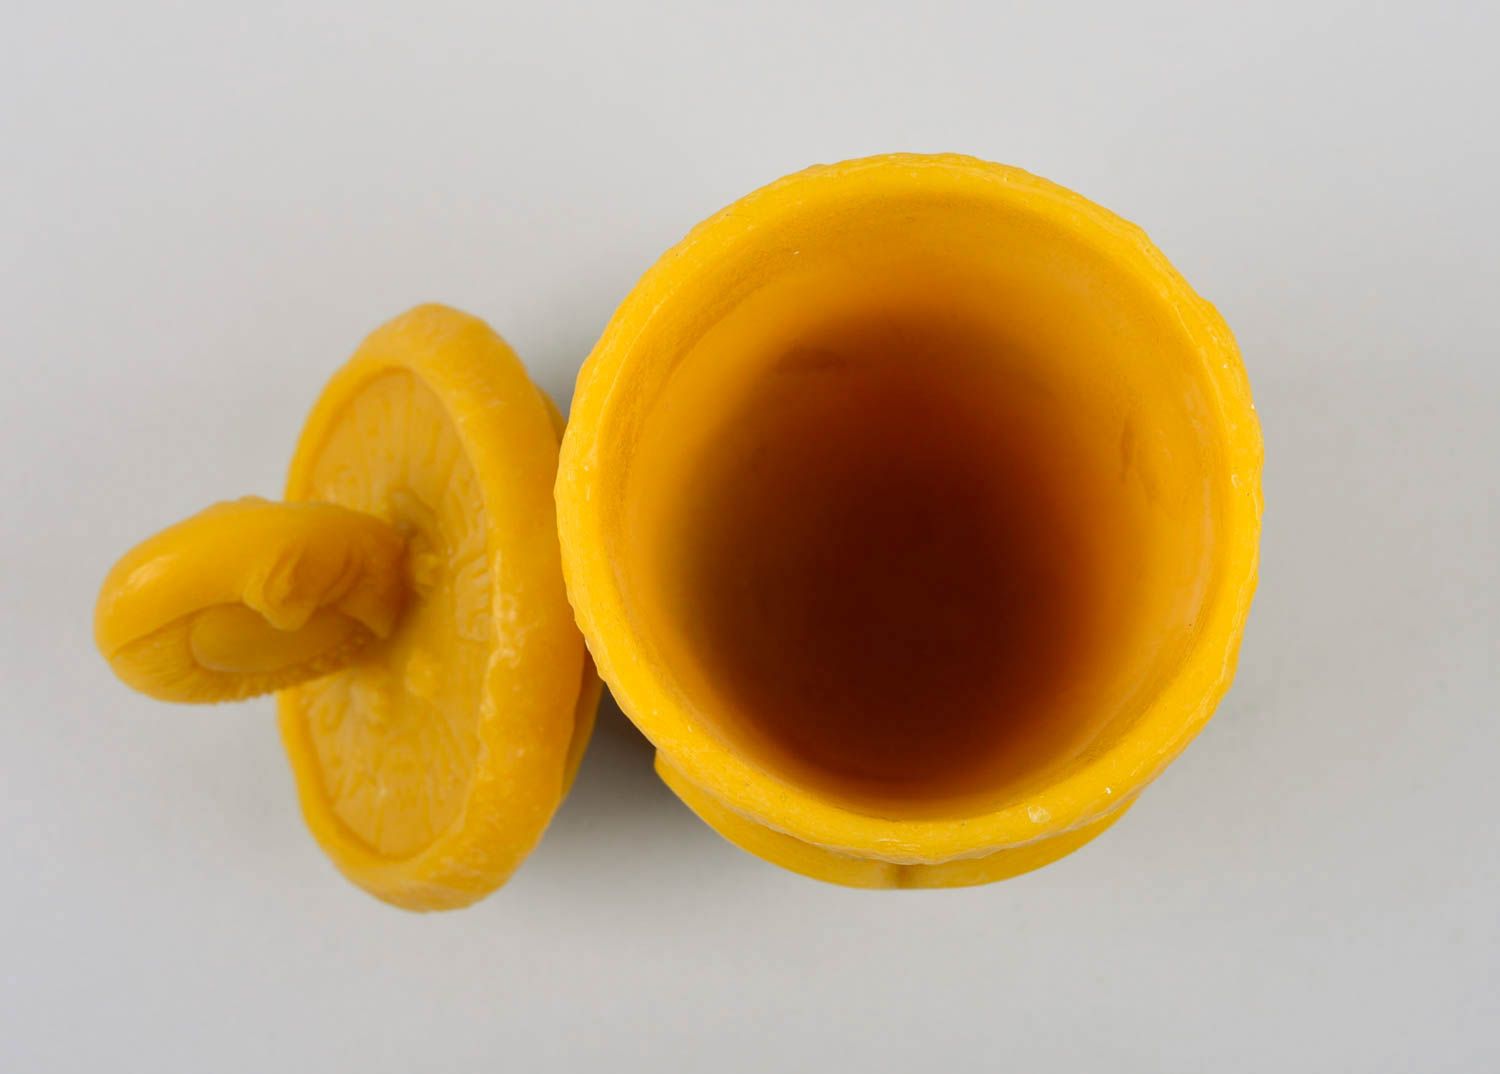 Красивый стакан ручной работы столовая посуда Овен экологическая посуда из воска фото 10